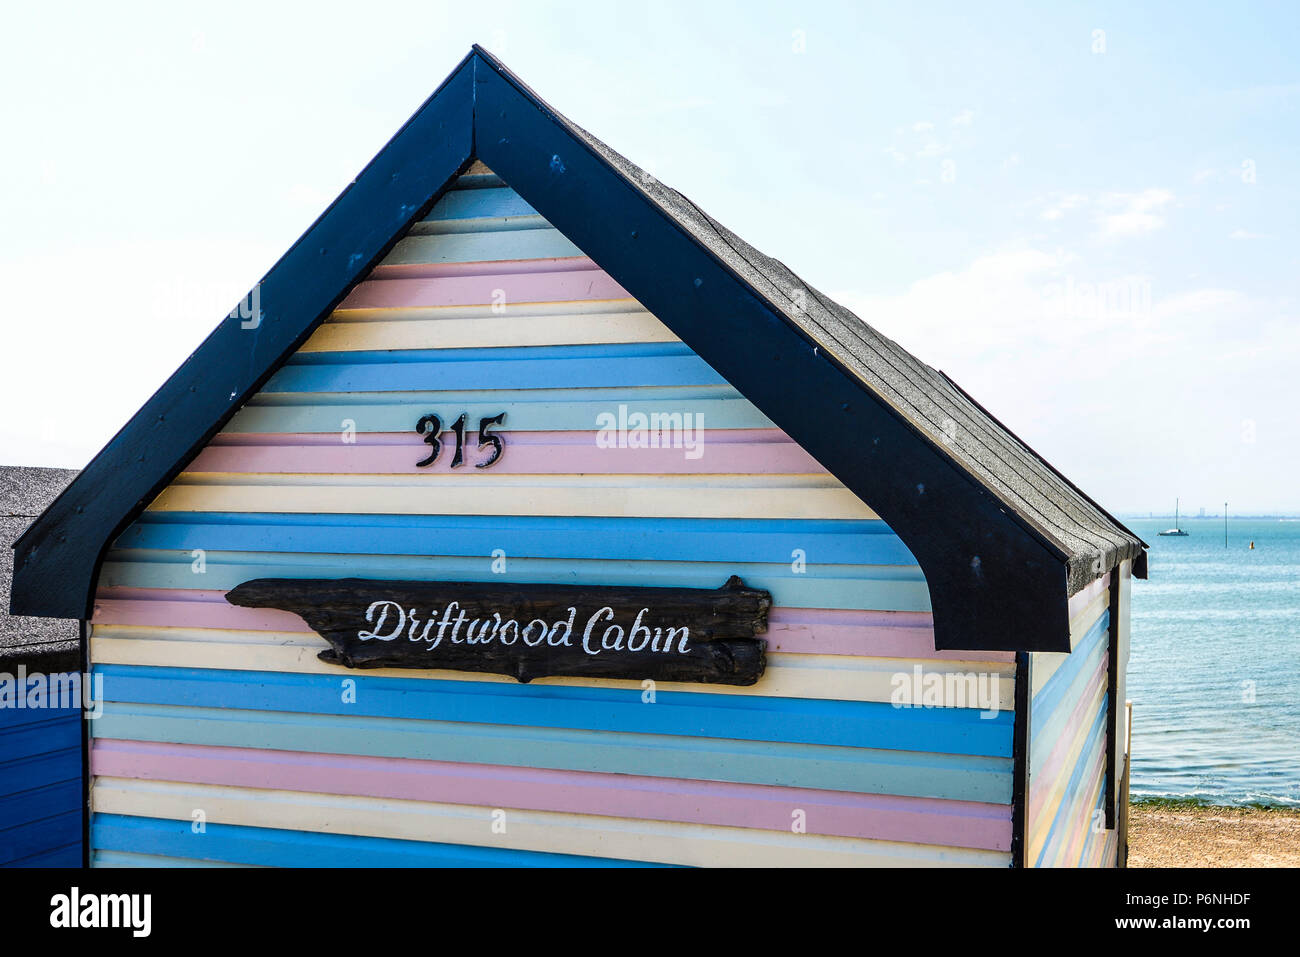 Driftwood Cabin. Capanna a righe colorate a Thorpe Bay, Southend on Sea, Essex, Regno Unito. Capanna da spiaggia in legno dipinto. Colori pastello Foto Stock